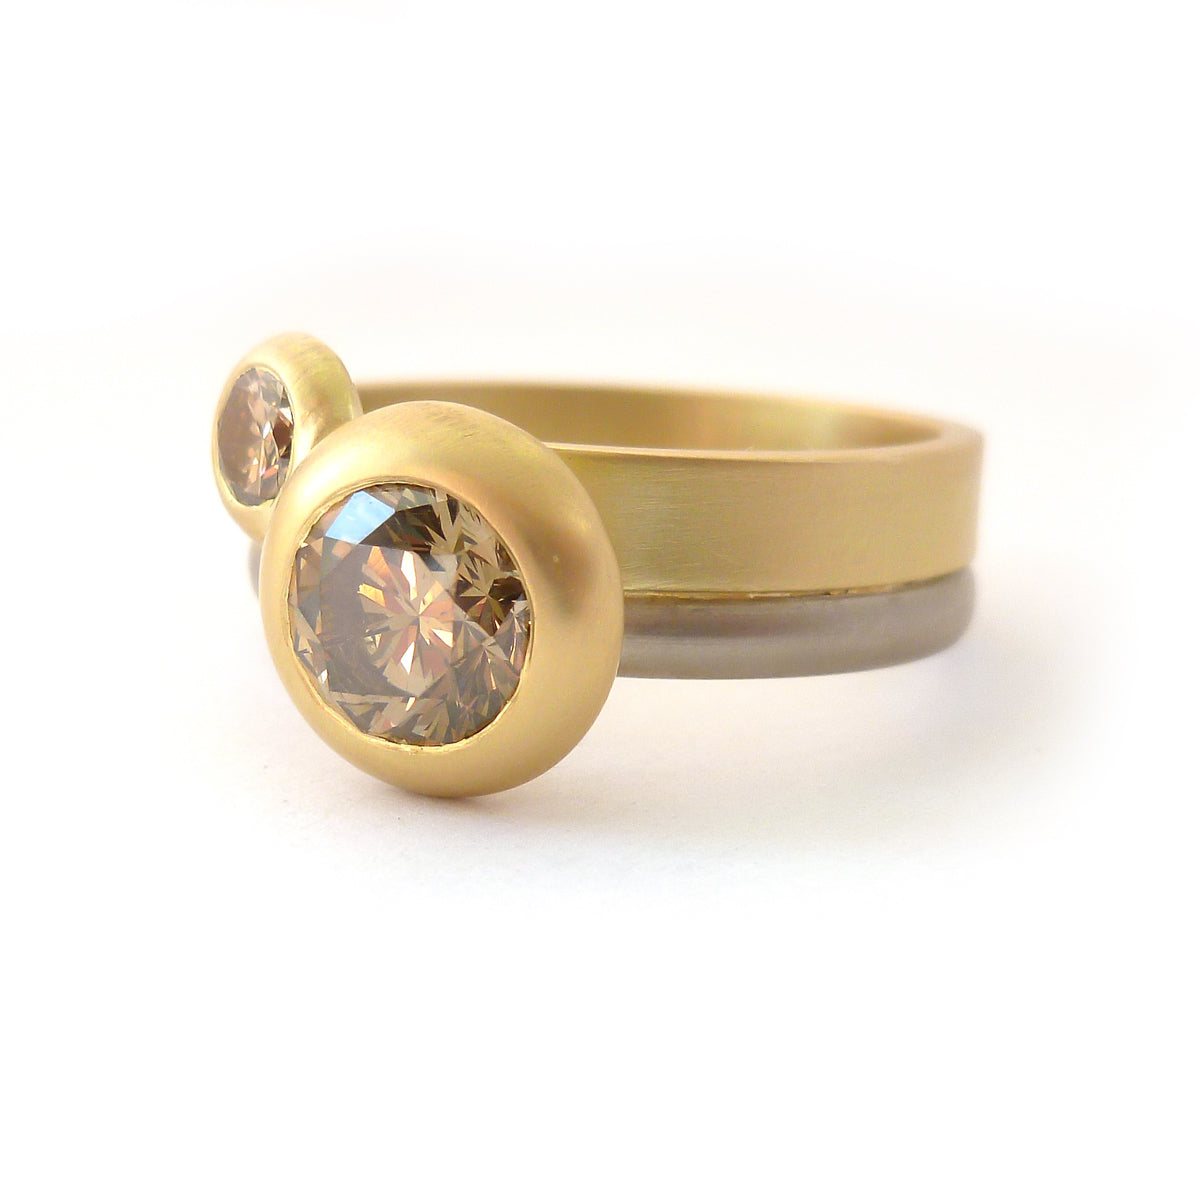 Stunning champagne diamond engagement 18ct yellow gold ring handmade bespoke and modern